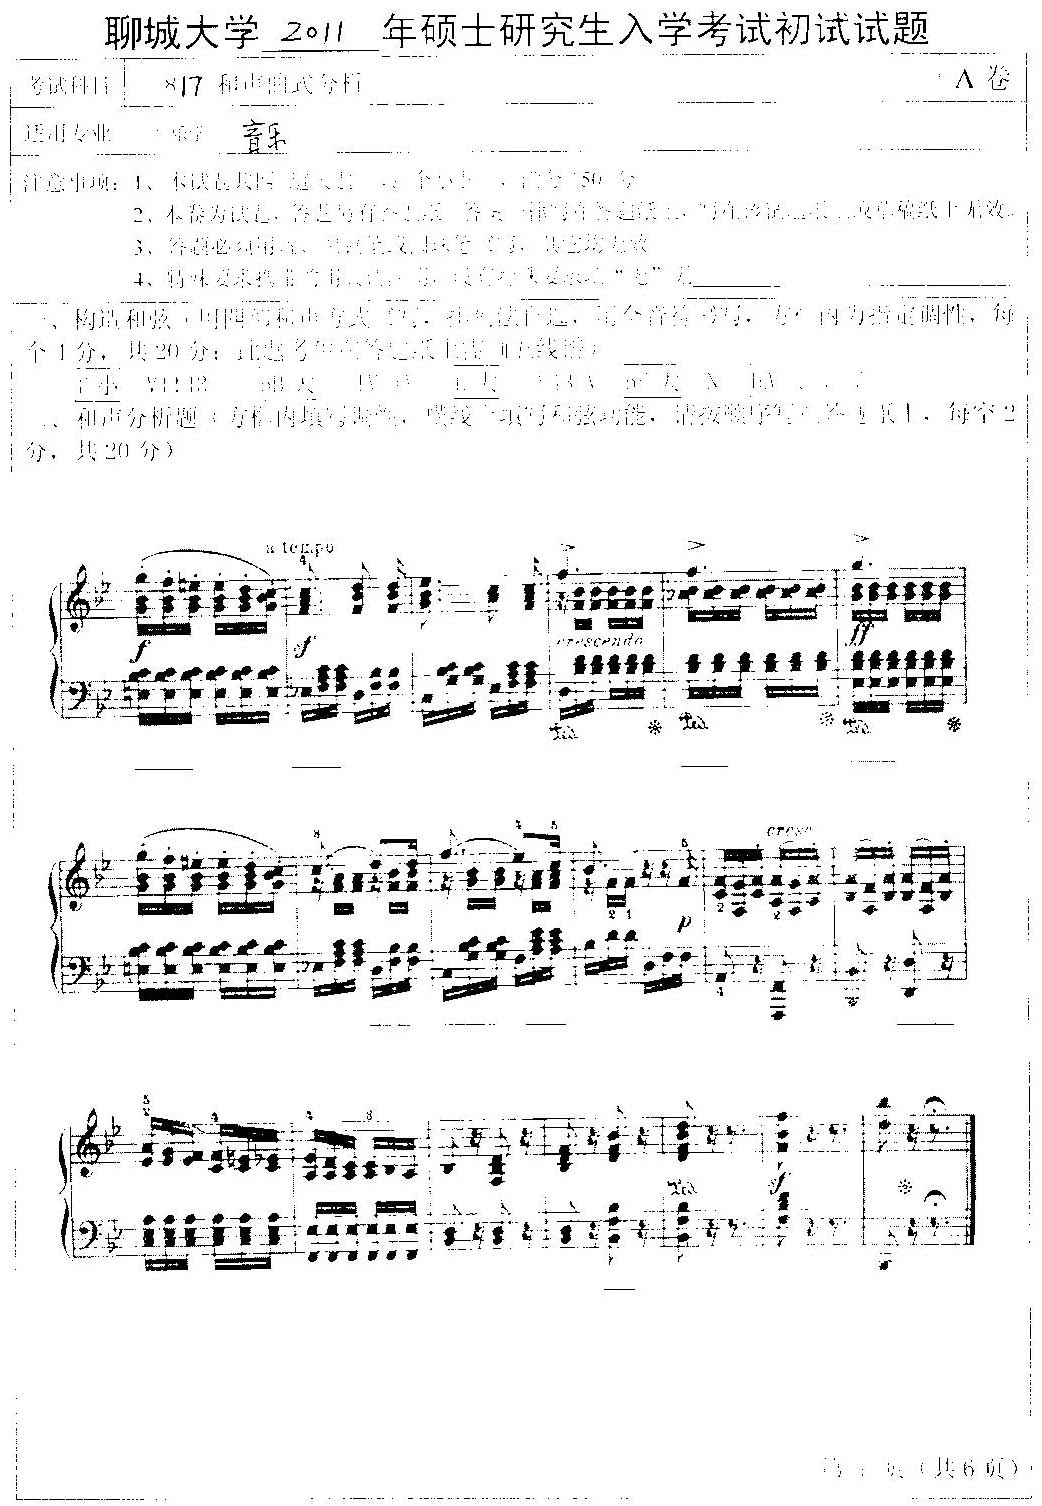 聊城大学音乐学院2011年考研初试和声曲式分